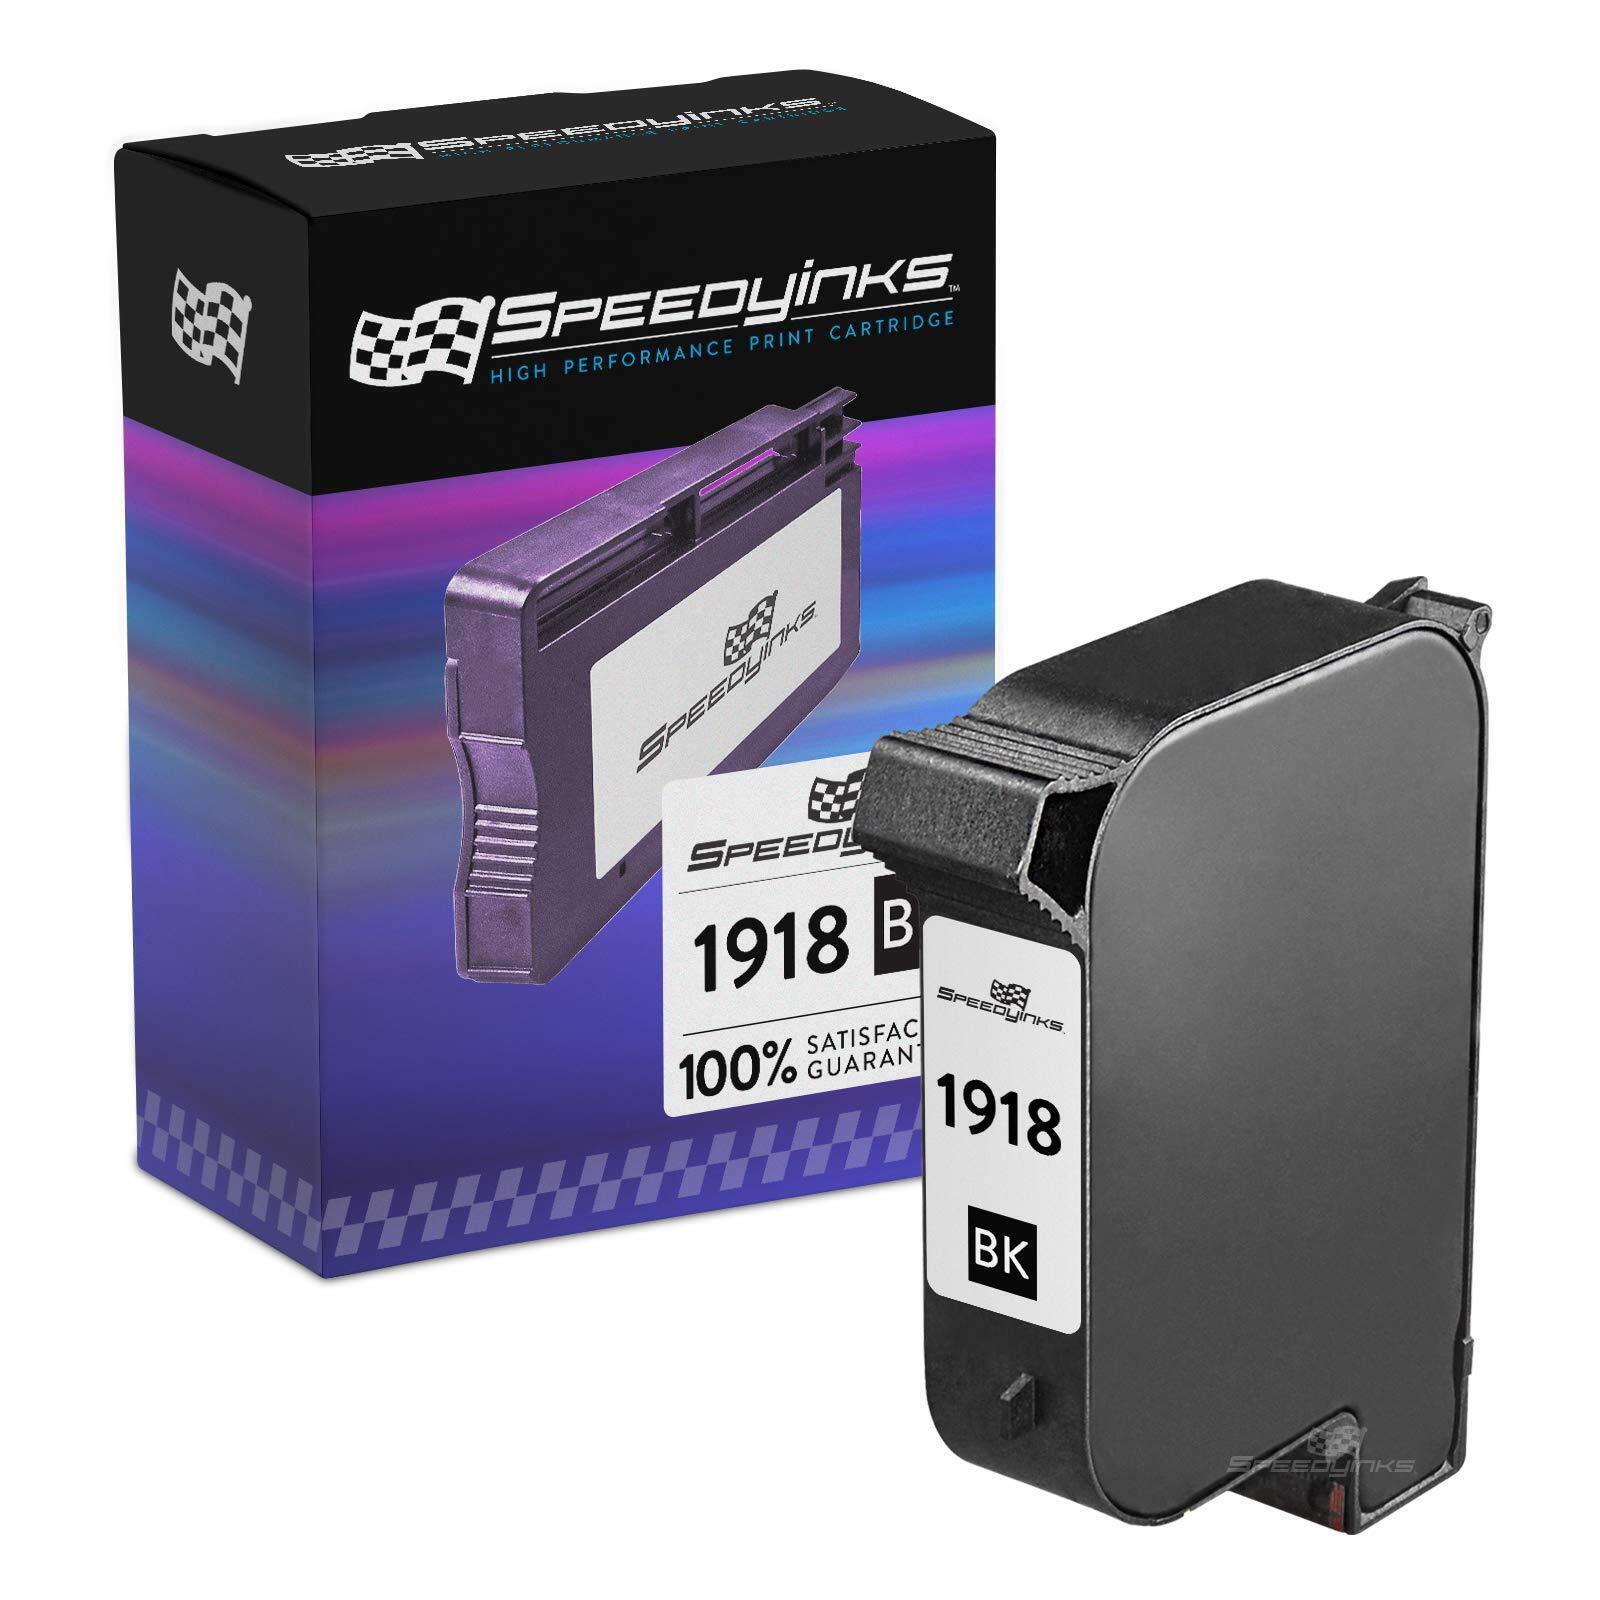 Reman Q2344A for HP 1918 BLACK Ink Cartridge AddressRight DA400 DA500 DA70S W990